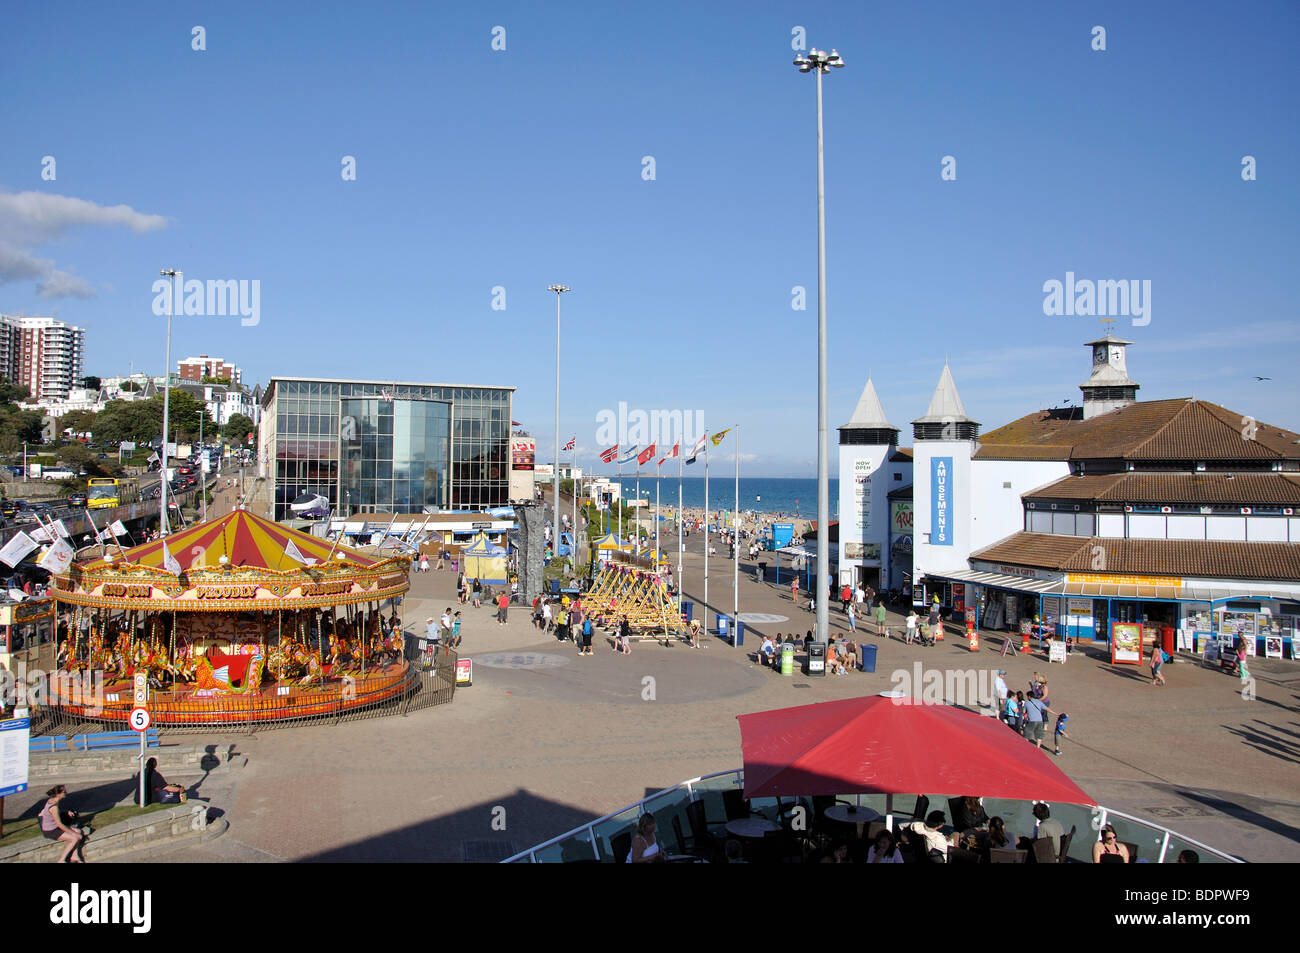 Seafront fairground, Bournemouth, Dorset, England, United Kingdom Stock Photo